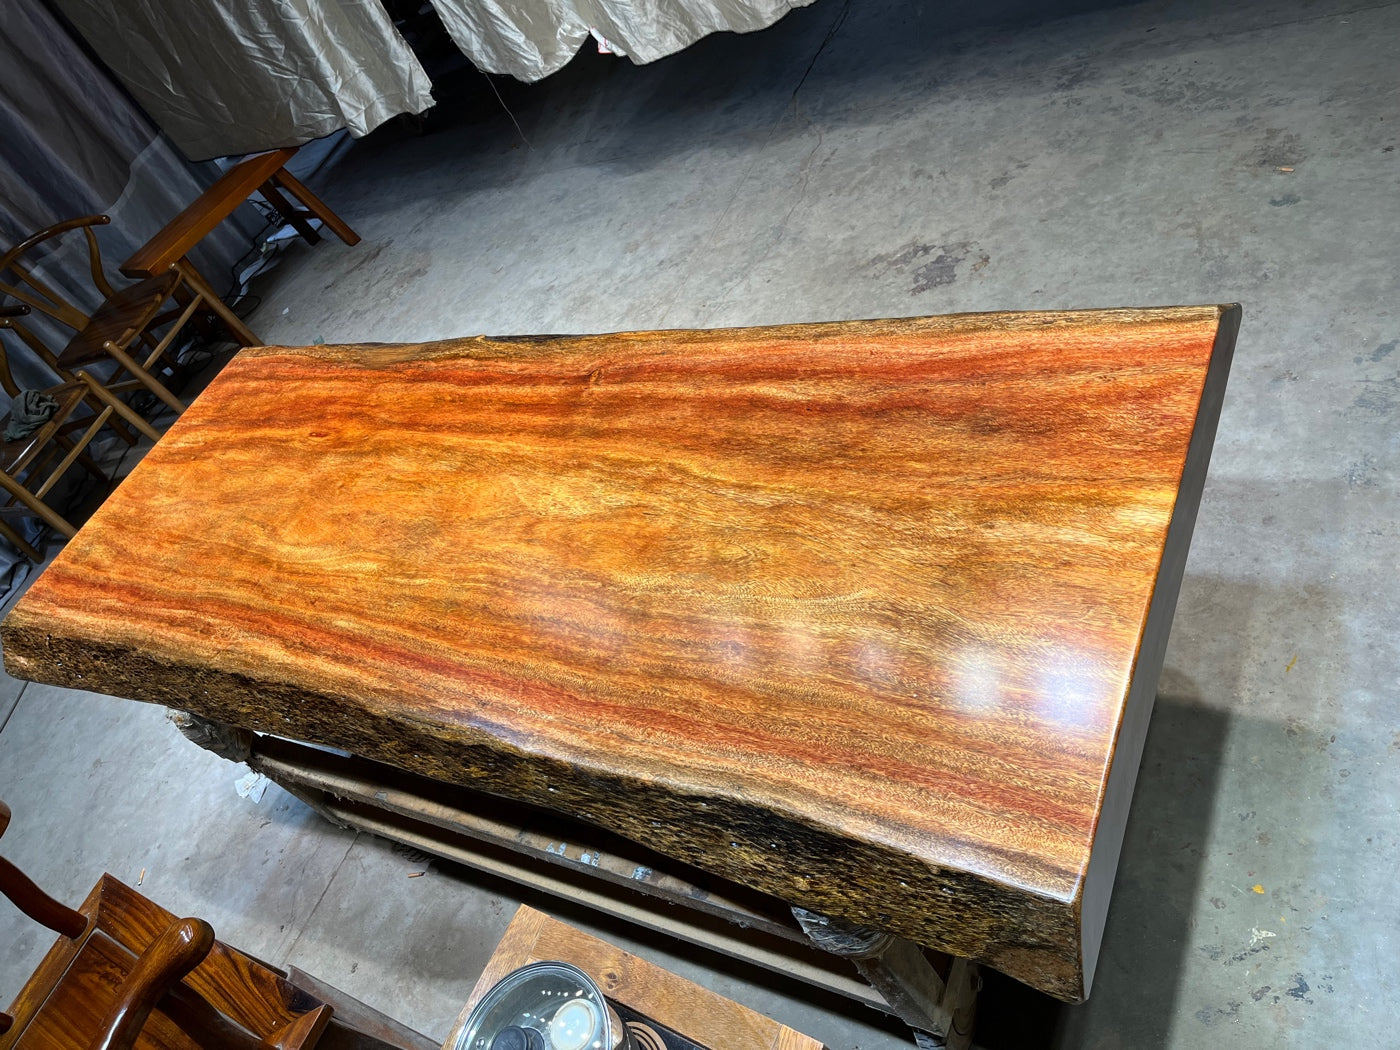 سطح طاولة من خشب تالي، لوح حافة حية من خشب تالي الأفريقي للأثاث